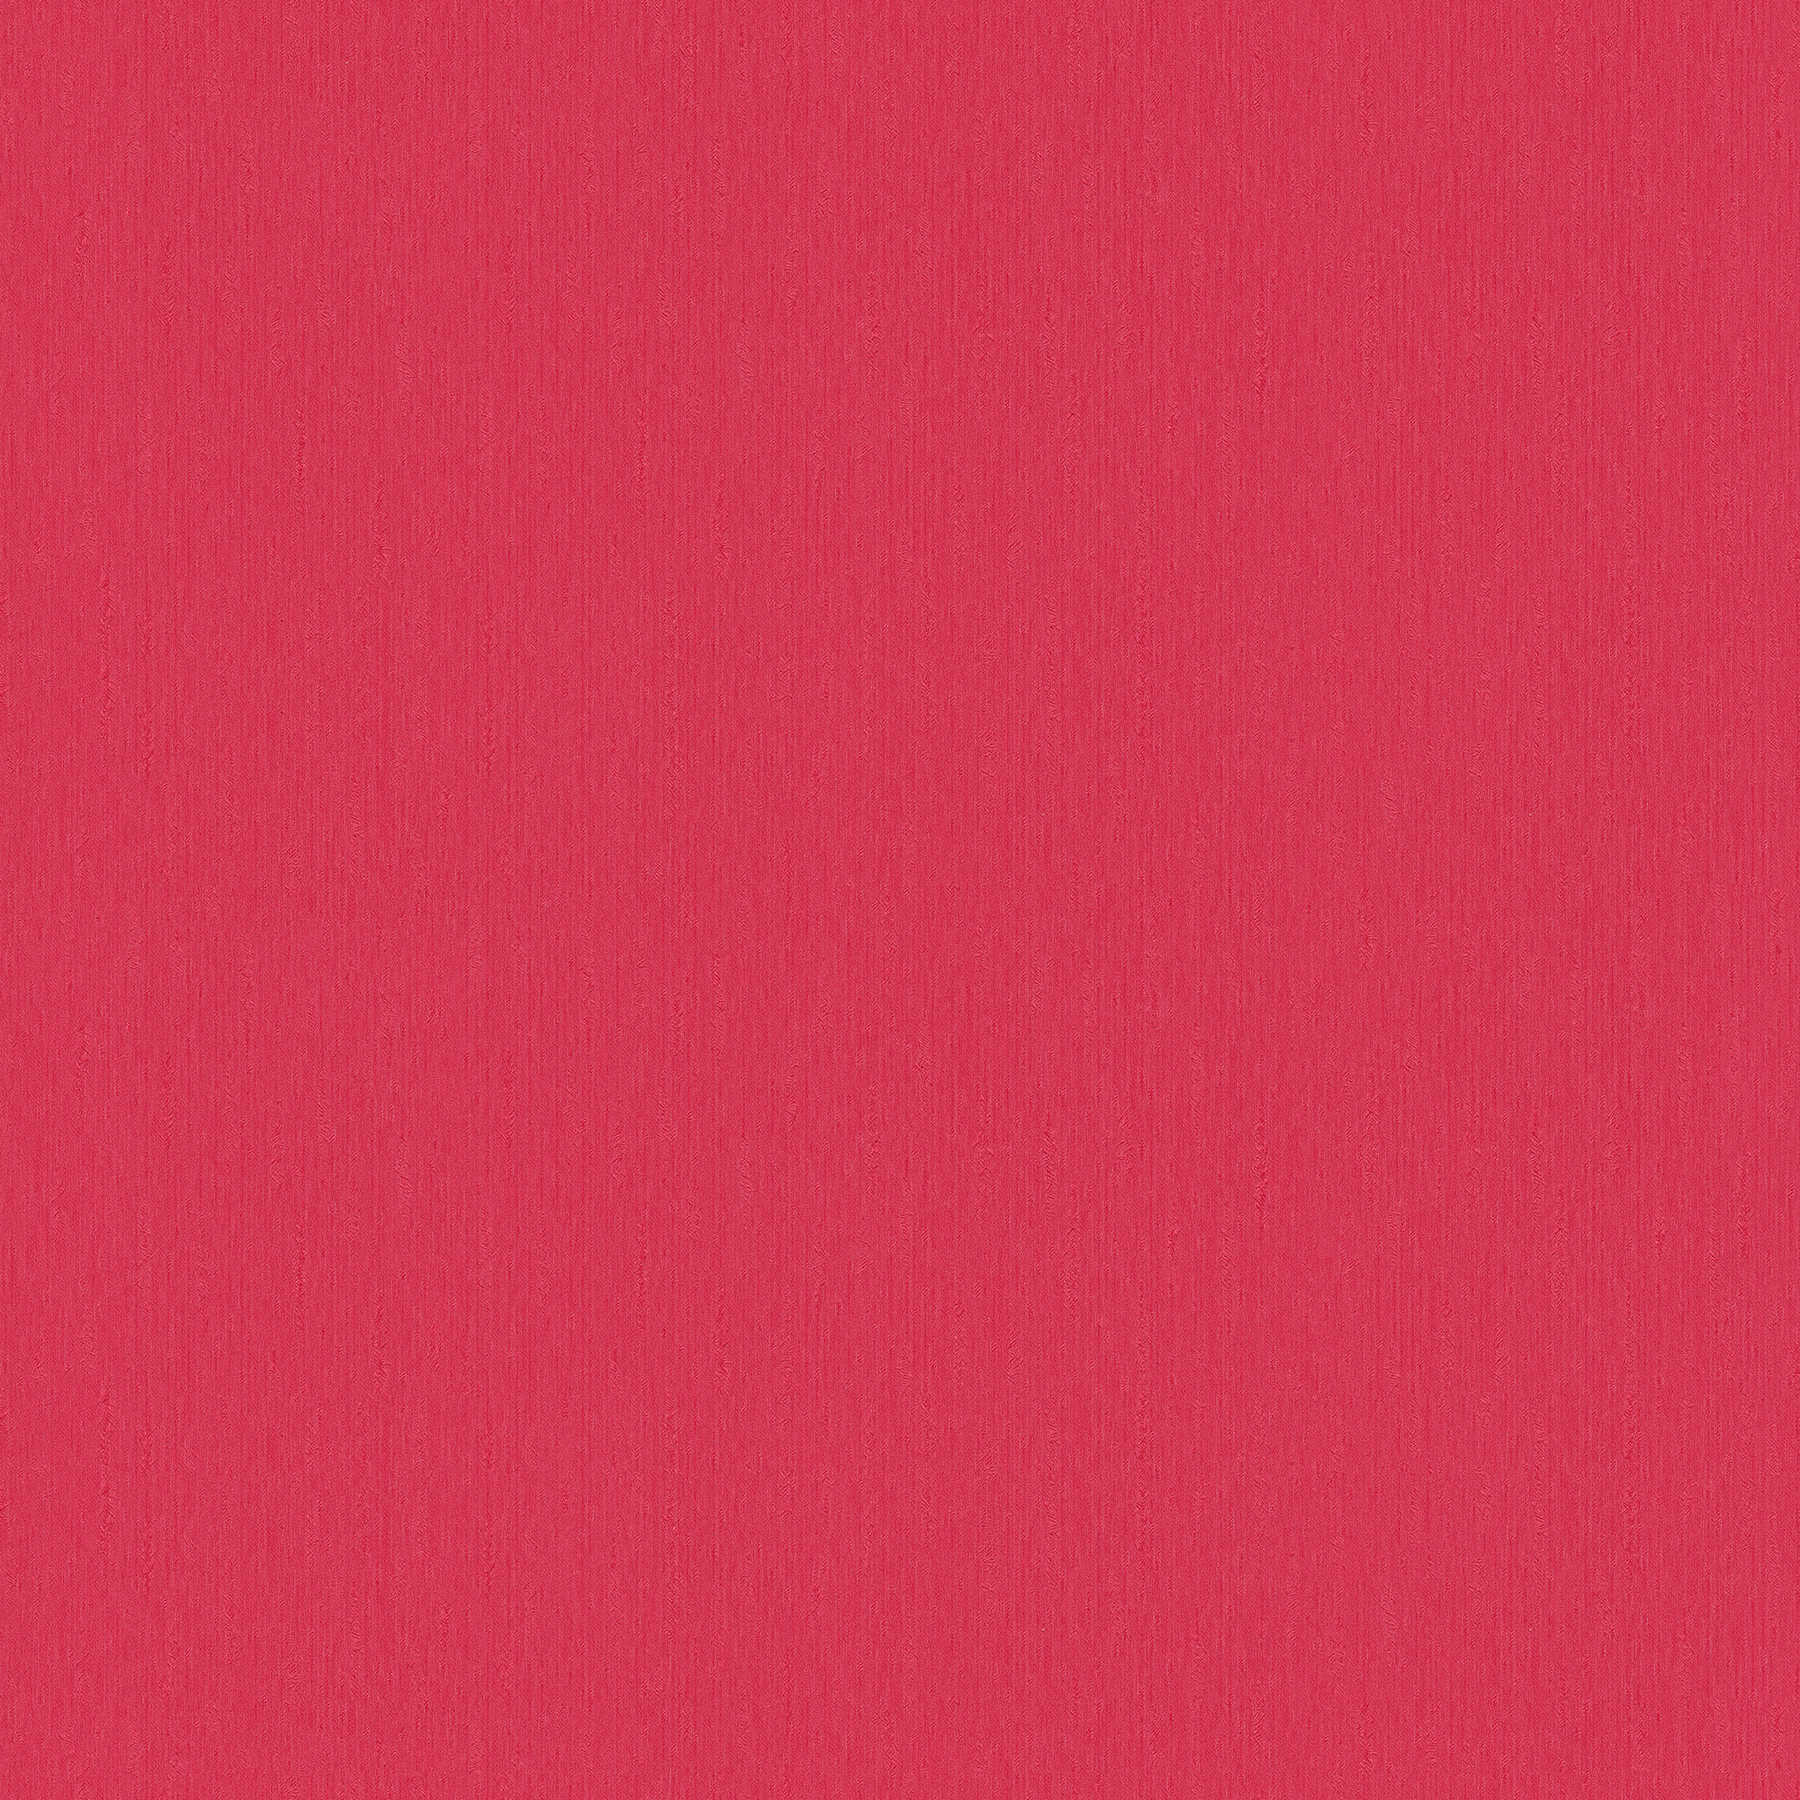 Papier peint intissé rouge fuchsia intense avec finition satinée
